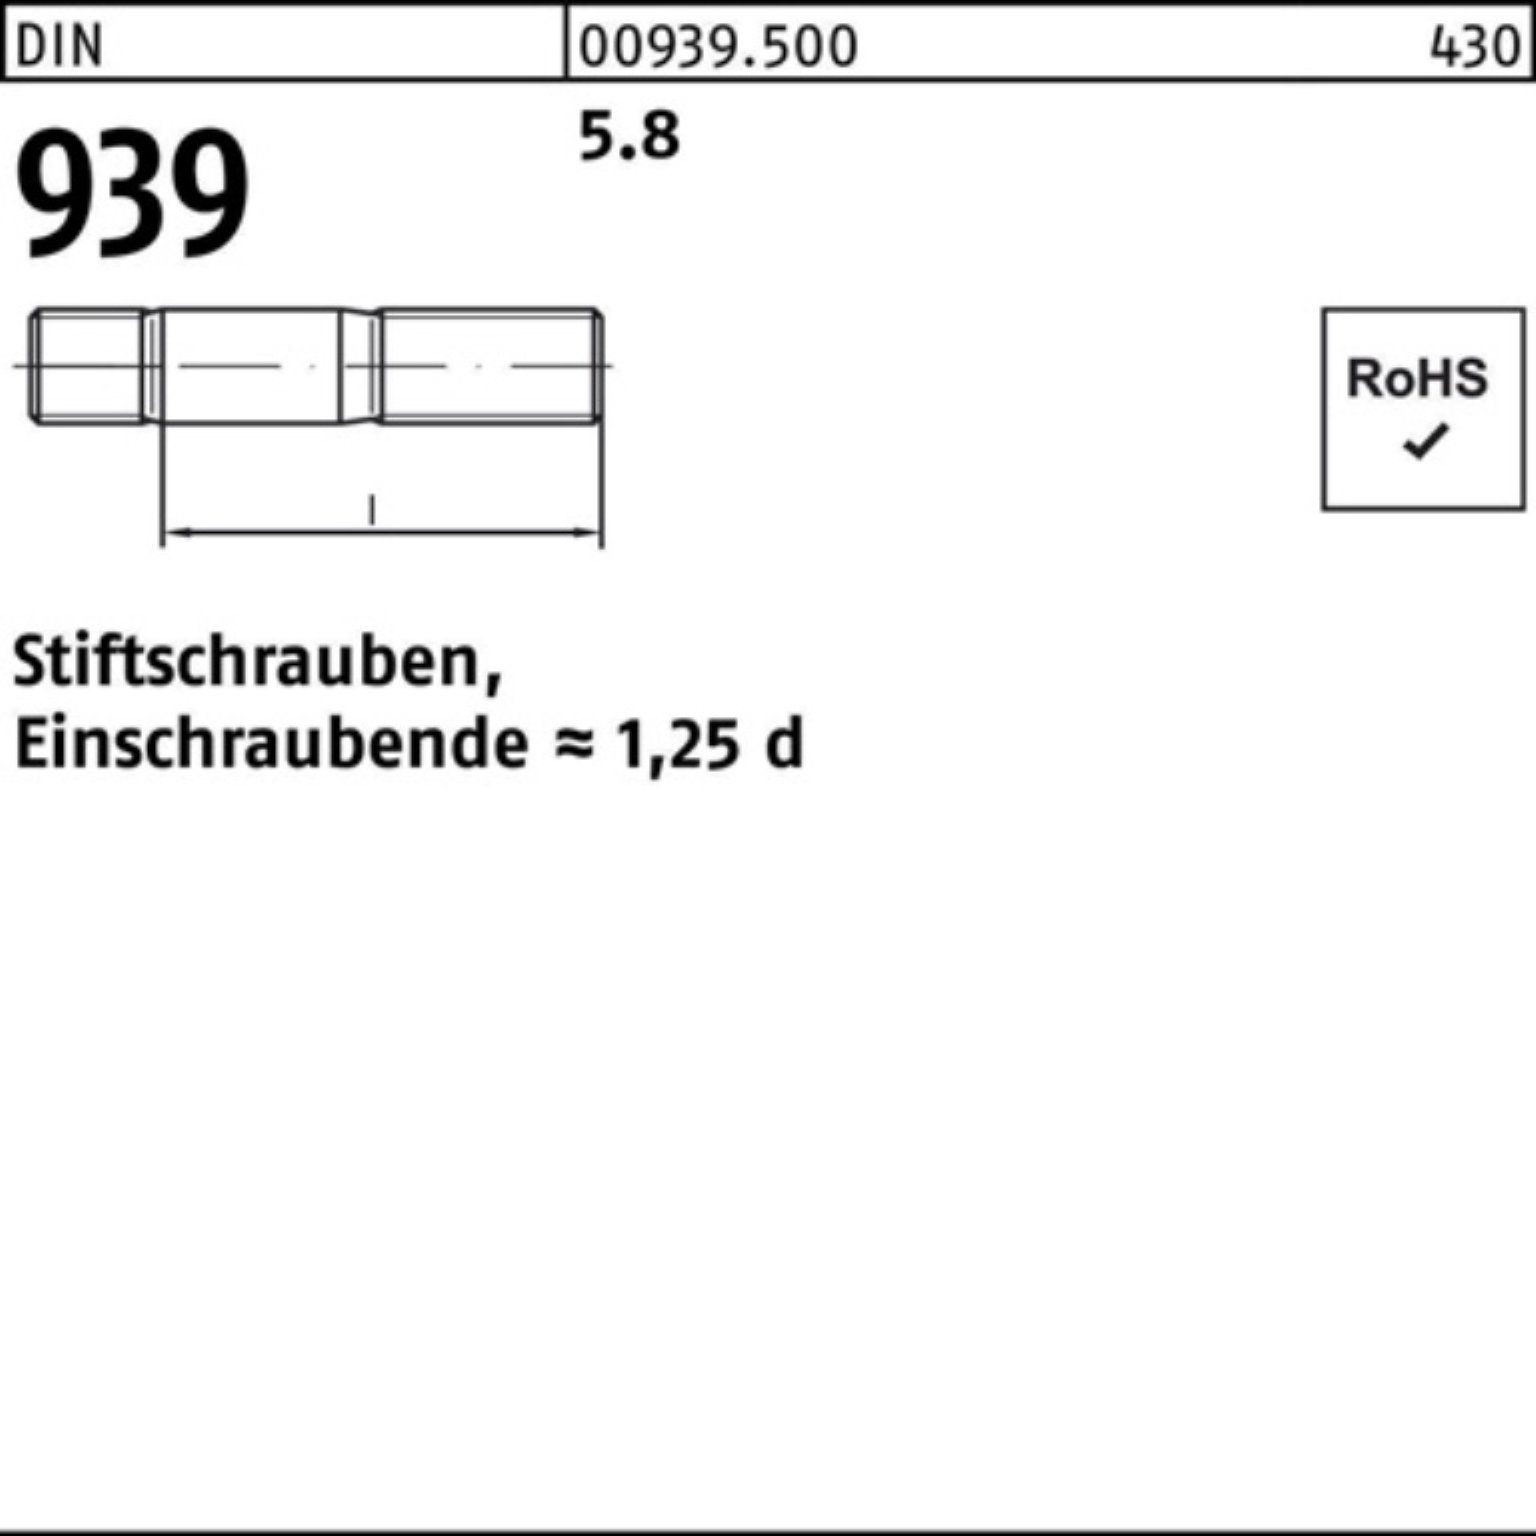 5.8 M24x Einschraubende=1,25d Reyher Pack 939 Stiftschraube DIN 180 100er Stiftschraube 10